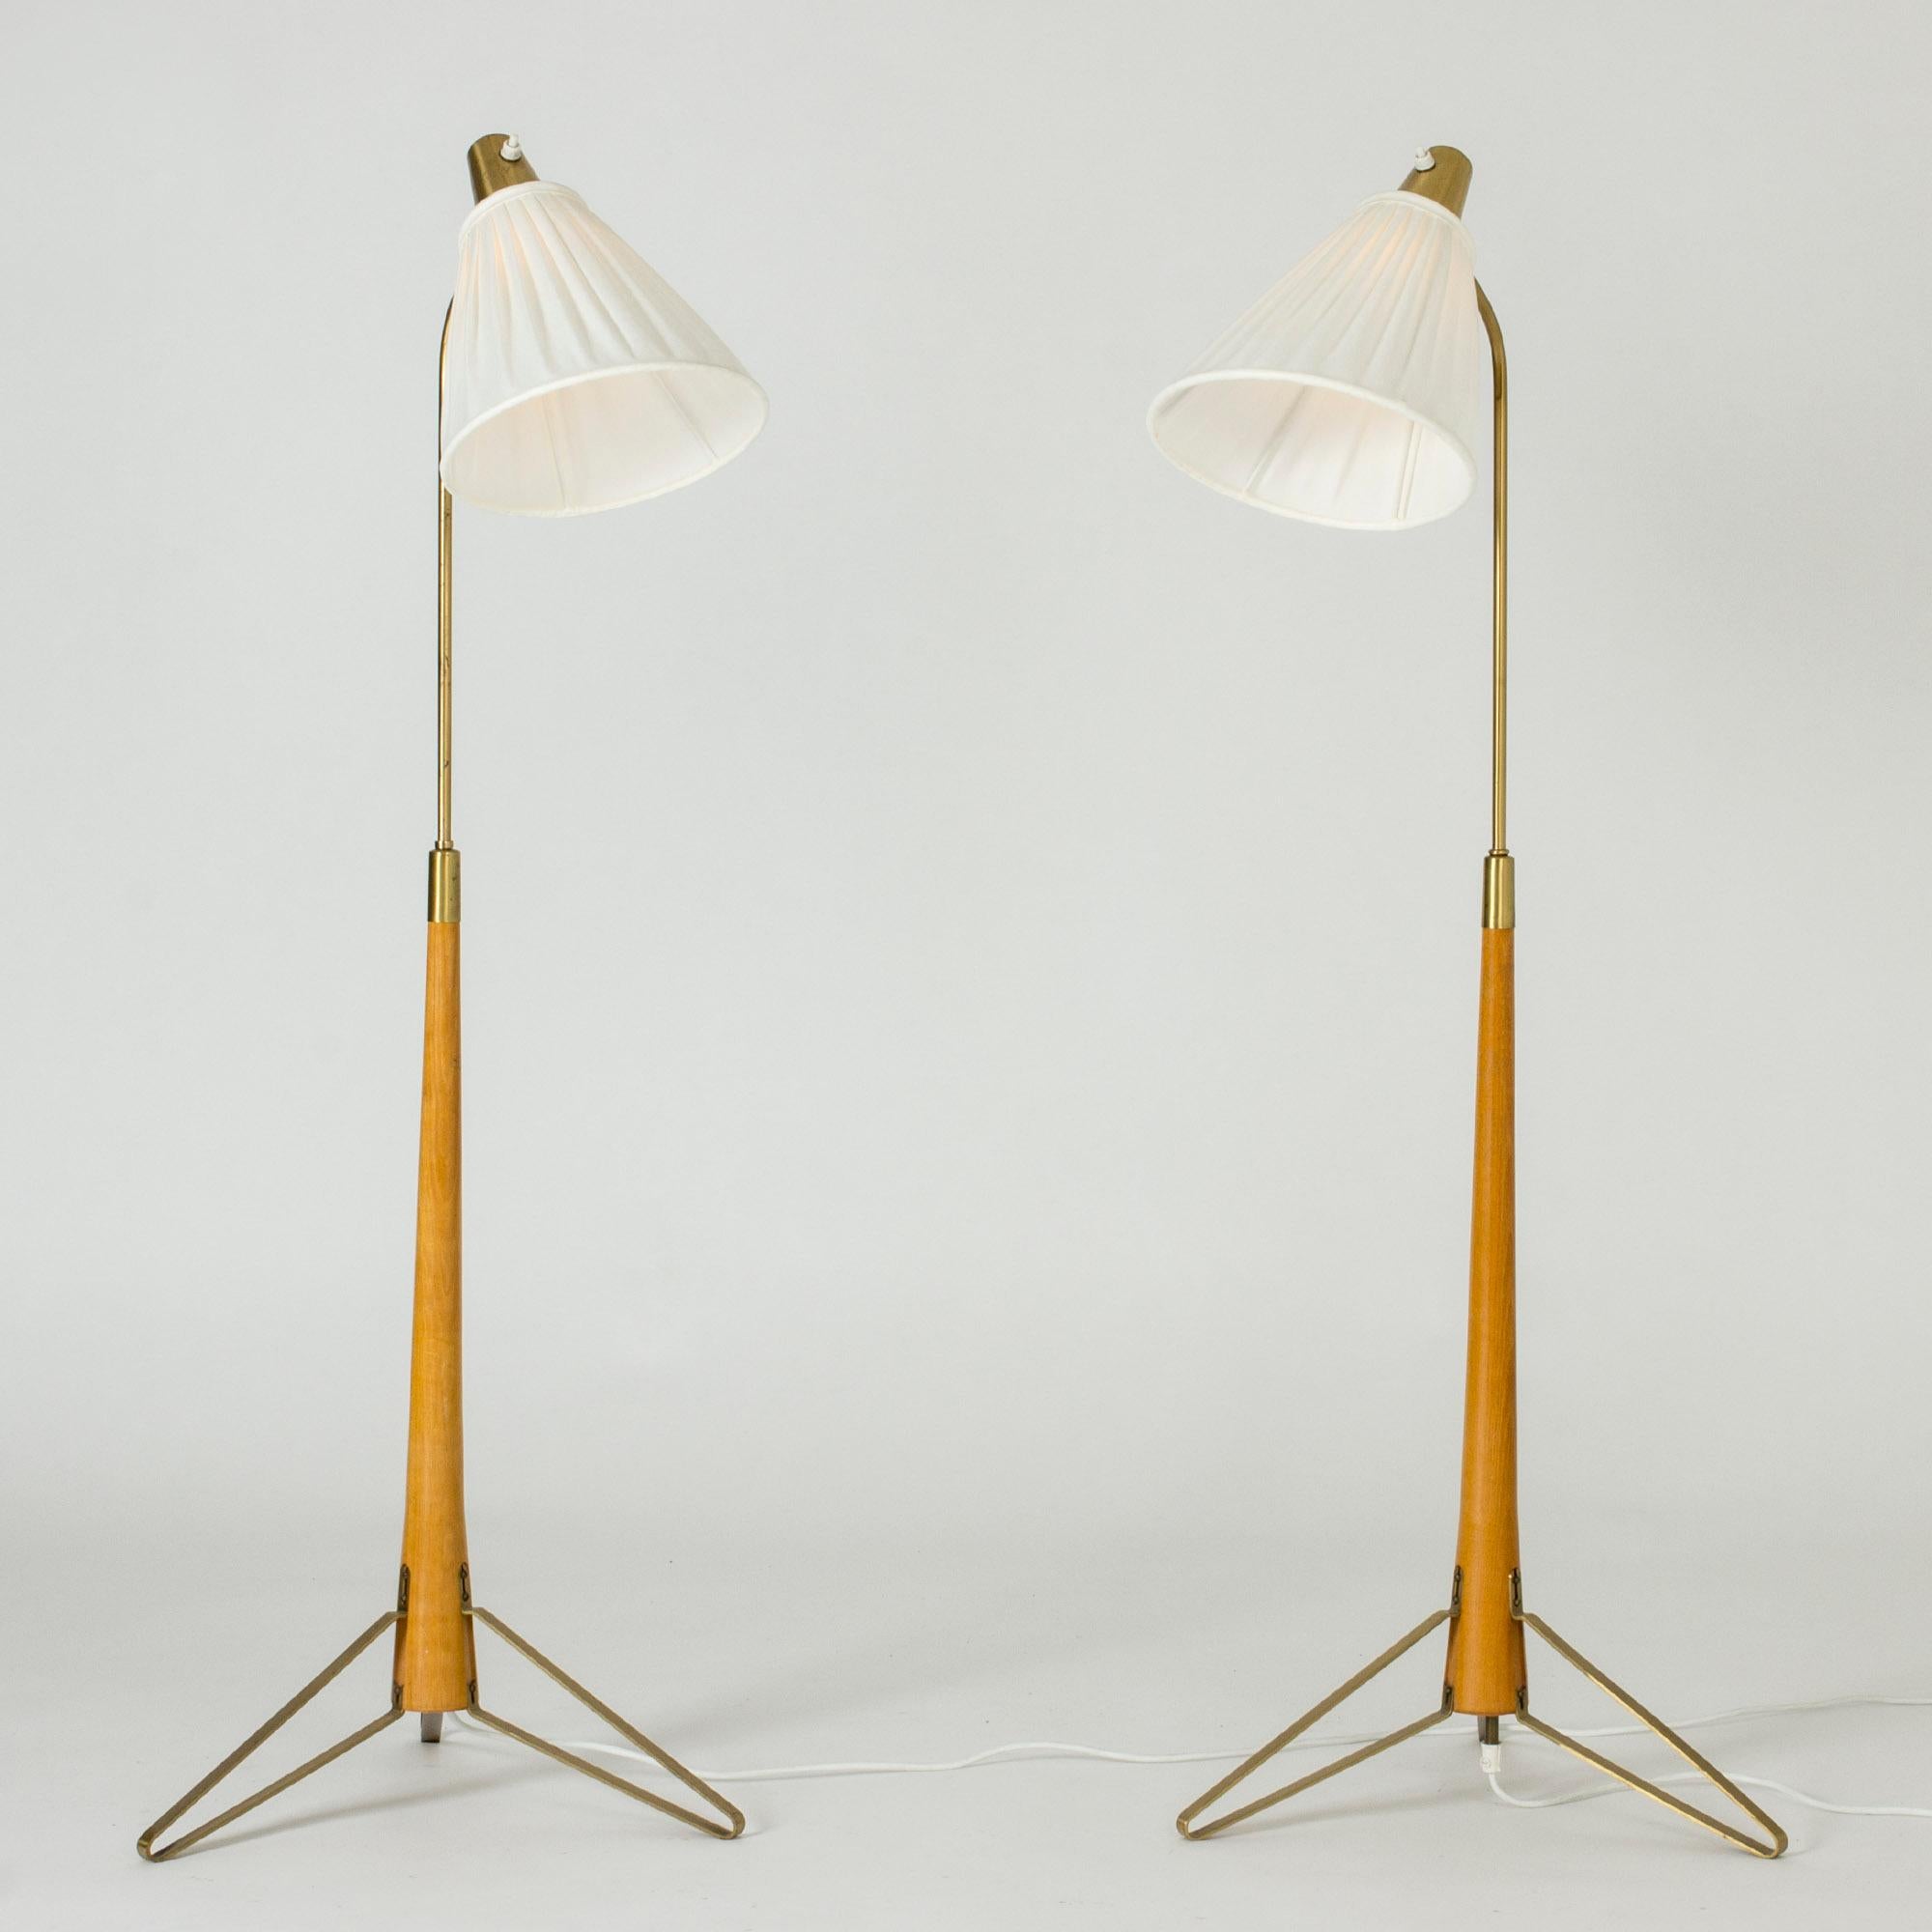 Paire de lampadaires en laiton de Hans Foldes, avec des poignées en hêtre et des pieds en laiton pliés.

Les lampes ont la même hauteur la plus basse, 116 cm, mais peuvent être réglées à différentes hauteurs, 137,5 et 146,5 cm.

Hans Bergström